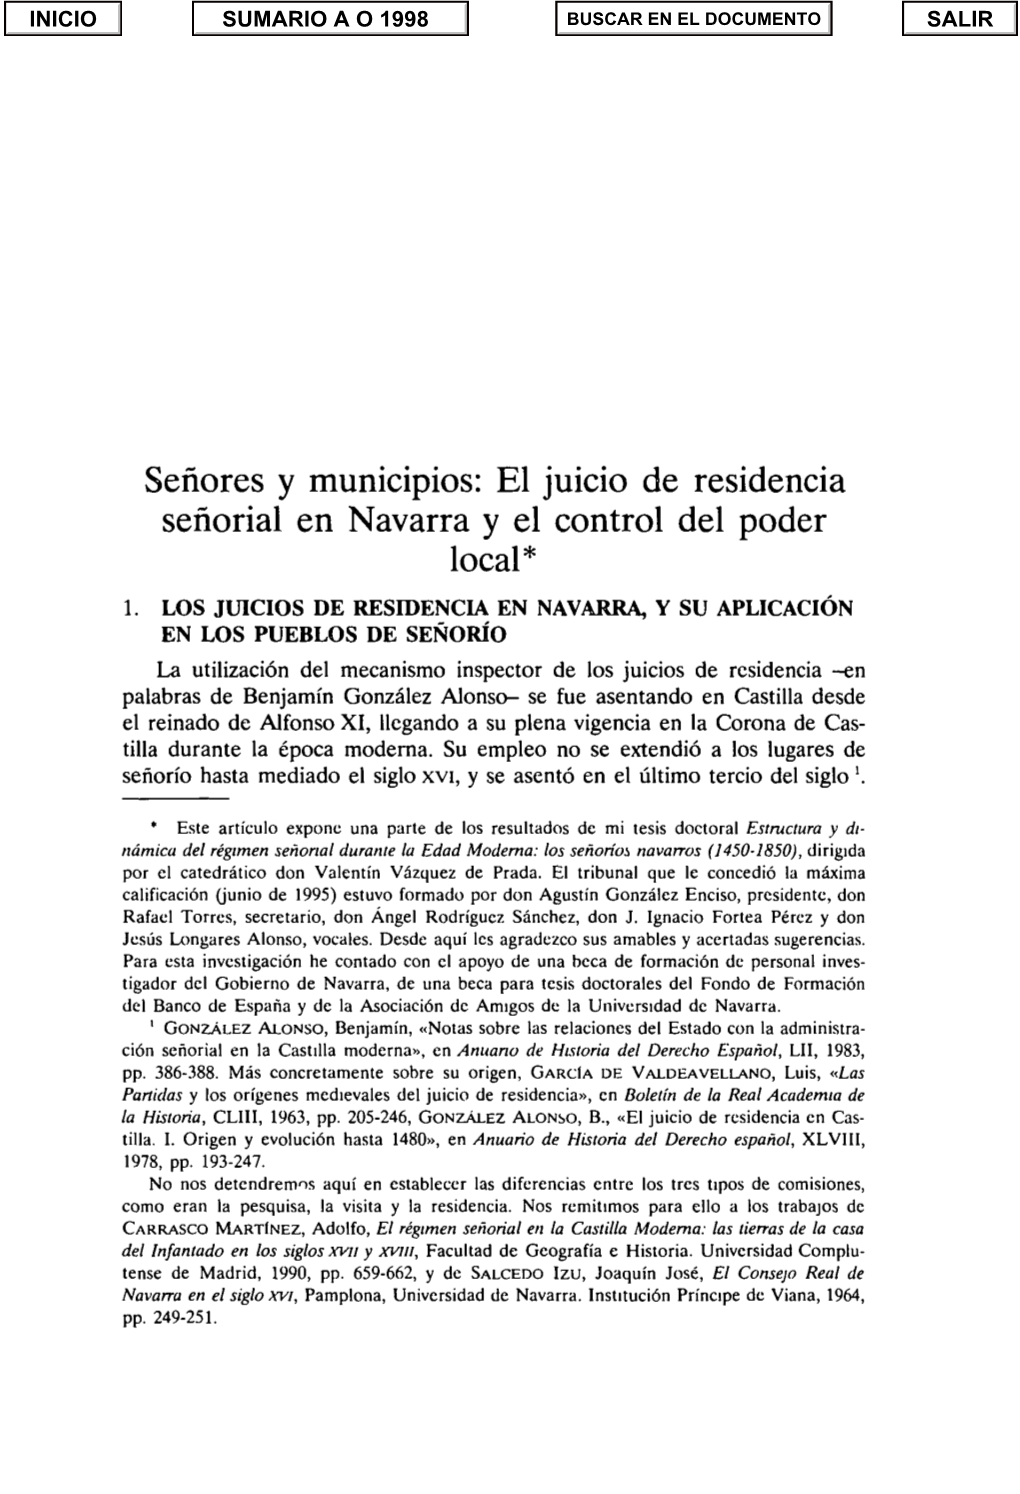 Señores Y Municipios: El Juicio De Residencia Señorial En Navarra Y El